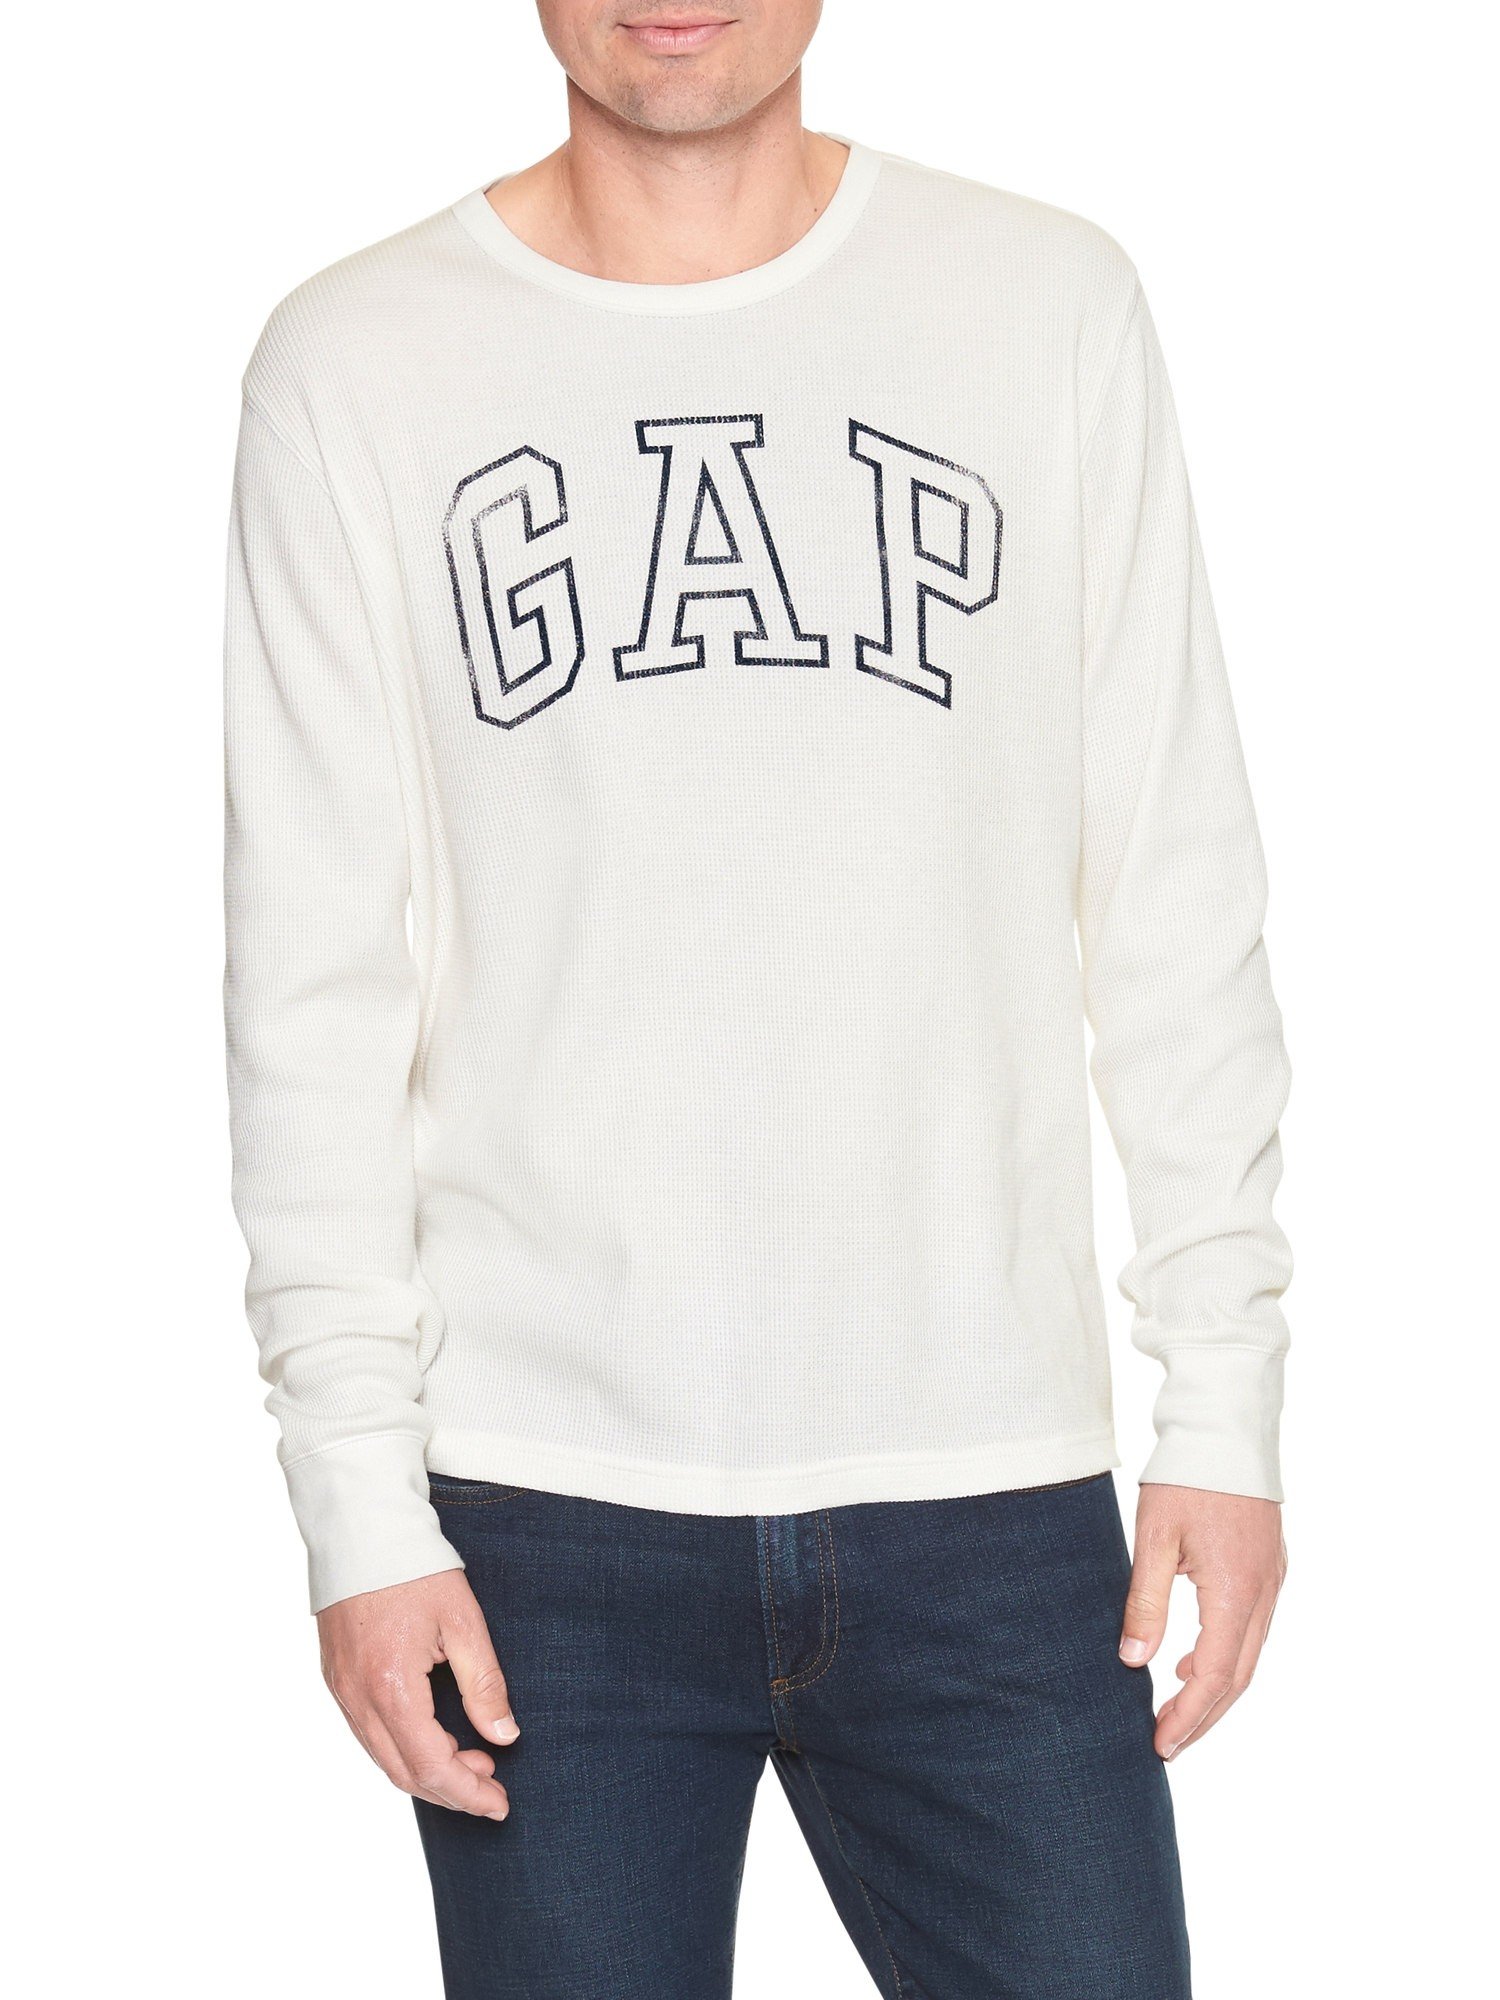 Gap Logo termal t-shirt product image